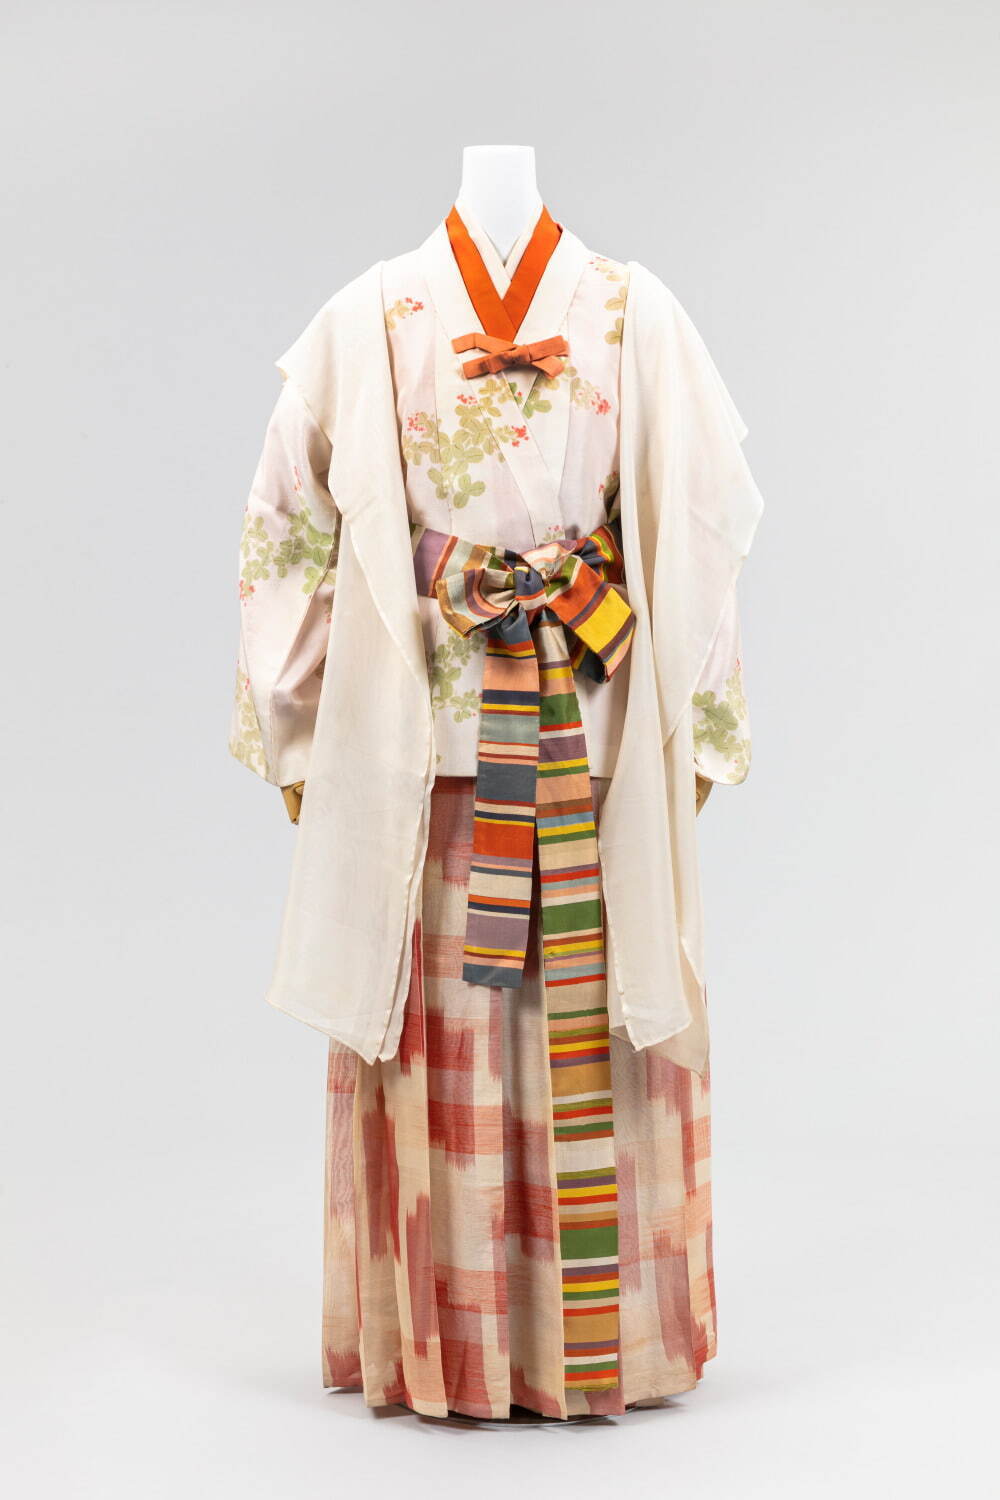 再現 女性の服装1500年 京都の染織技術の粋 文化学園服飾博物館で 古墳 明治時代の時代衣裳 ファッションプレス